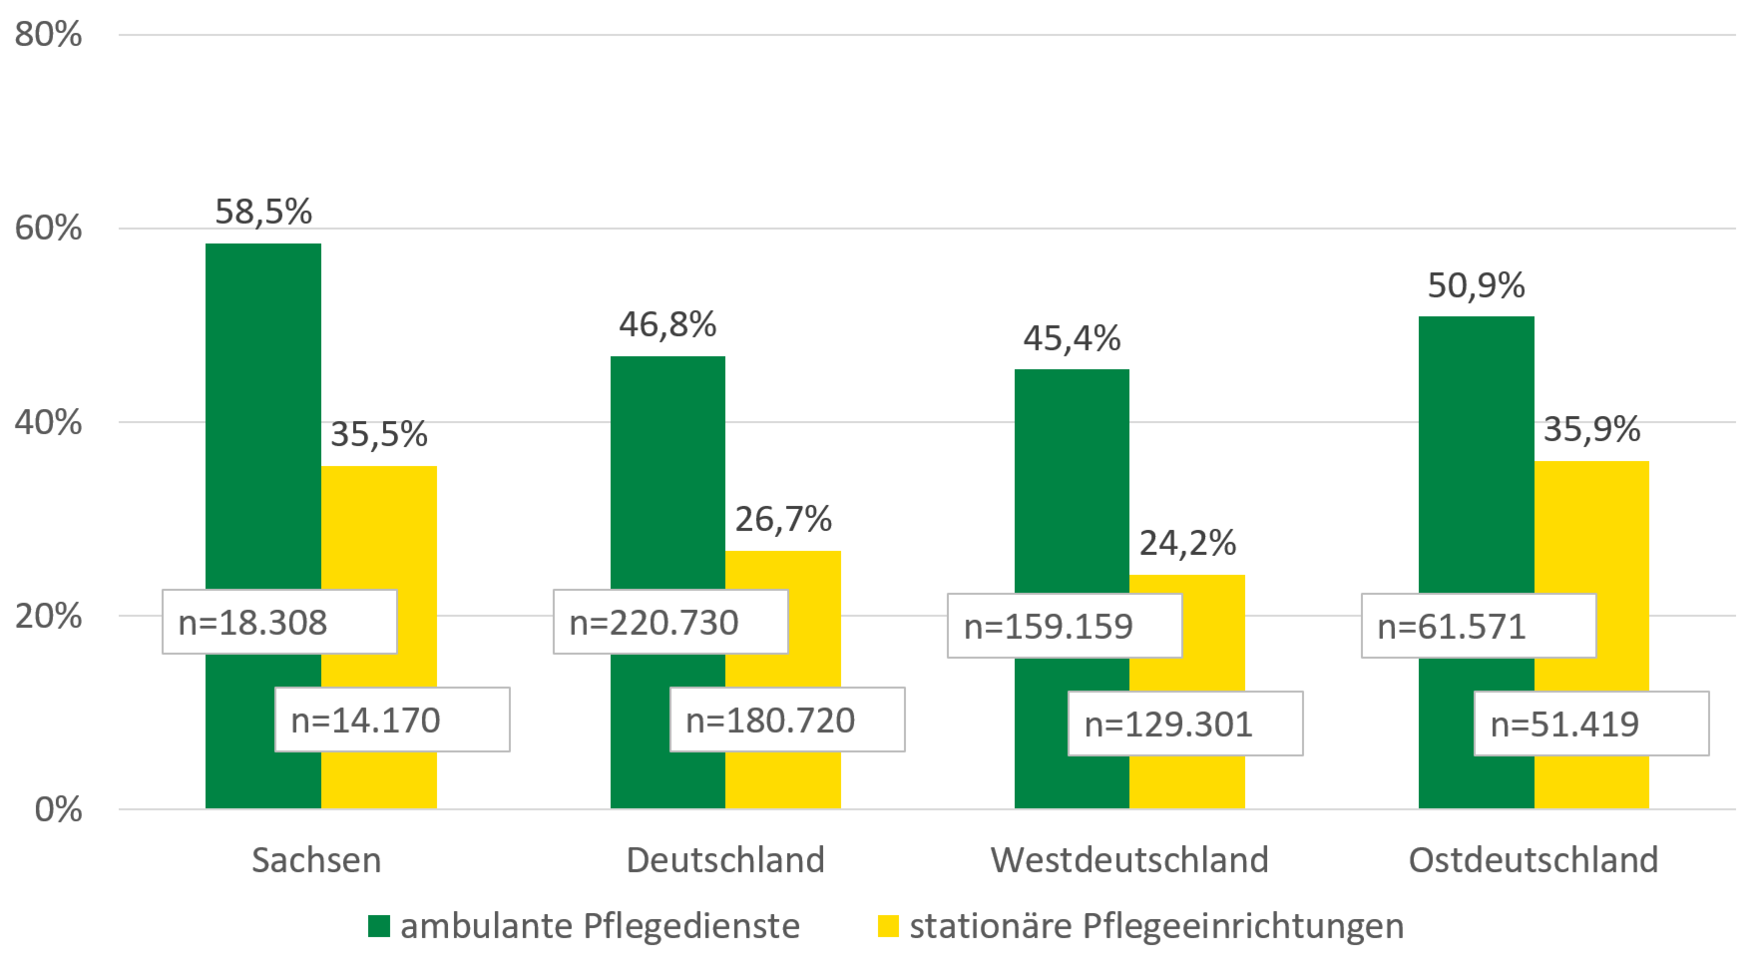 Die Zahl der Pflegebedürftigen in ambulanter Pflege nahm von 2005 bis 2015 in Sachsen um rund 59 Prozent, in Ostdeutschland um rund 51 Prozent, in Westdeutschland um rund 45 Prozent und in Gesamtdeutschland um rund 47 Prozent zu. Die Zahl Pflegebedürftiger in stationärer Pflege stieg im selben Zeitraum in Sachsen und Ostdeutschland um rund 36 Prozent, in Westdeutschland um rund 24 Prozent und in Gesamtdeutschland um rund 27 Prozent.